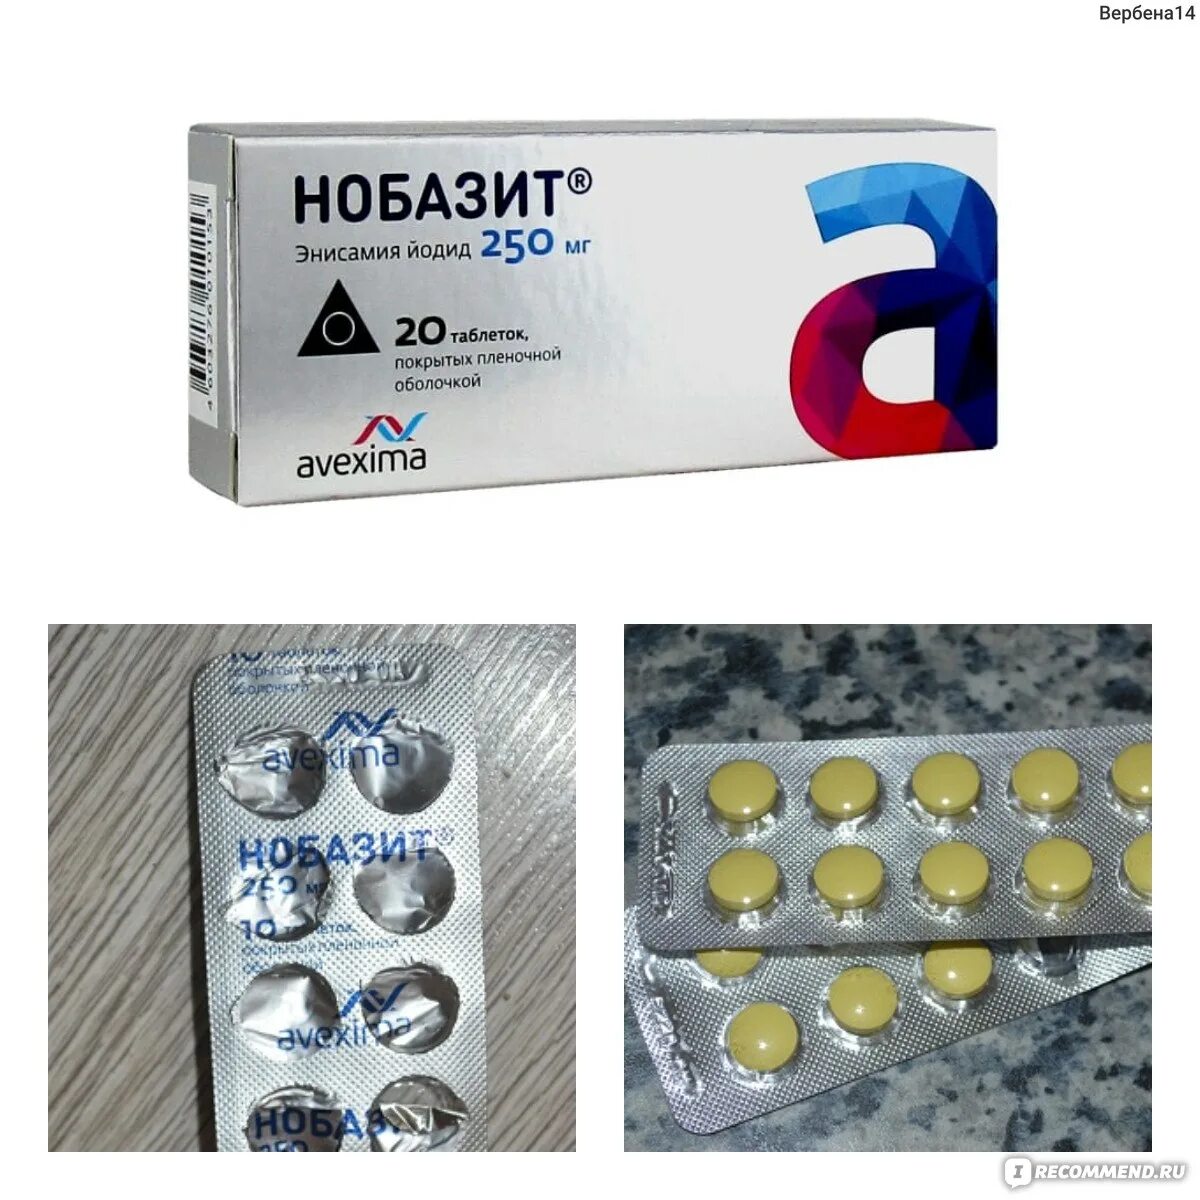 Противовирусные препараты Нобазит. Нобазит таблетки 250 мг. Нобазит Авексима. Новобазит противовирусный препарат.